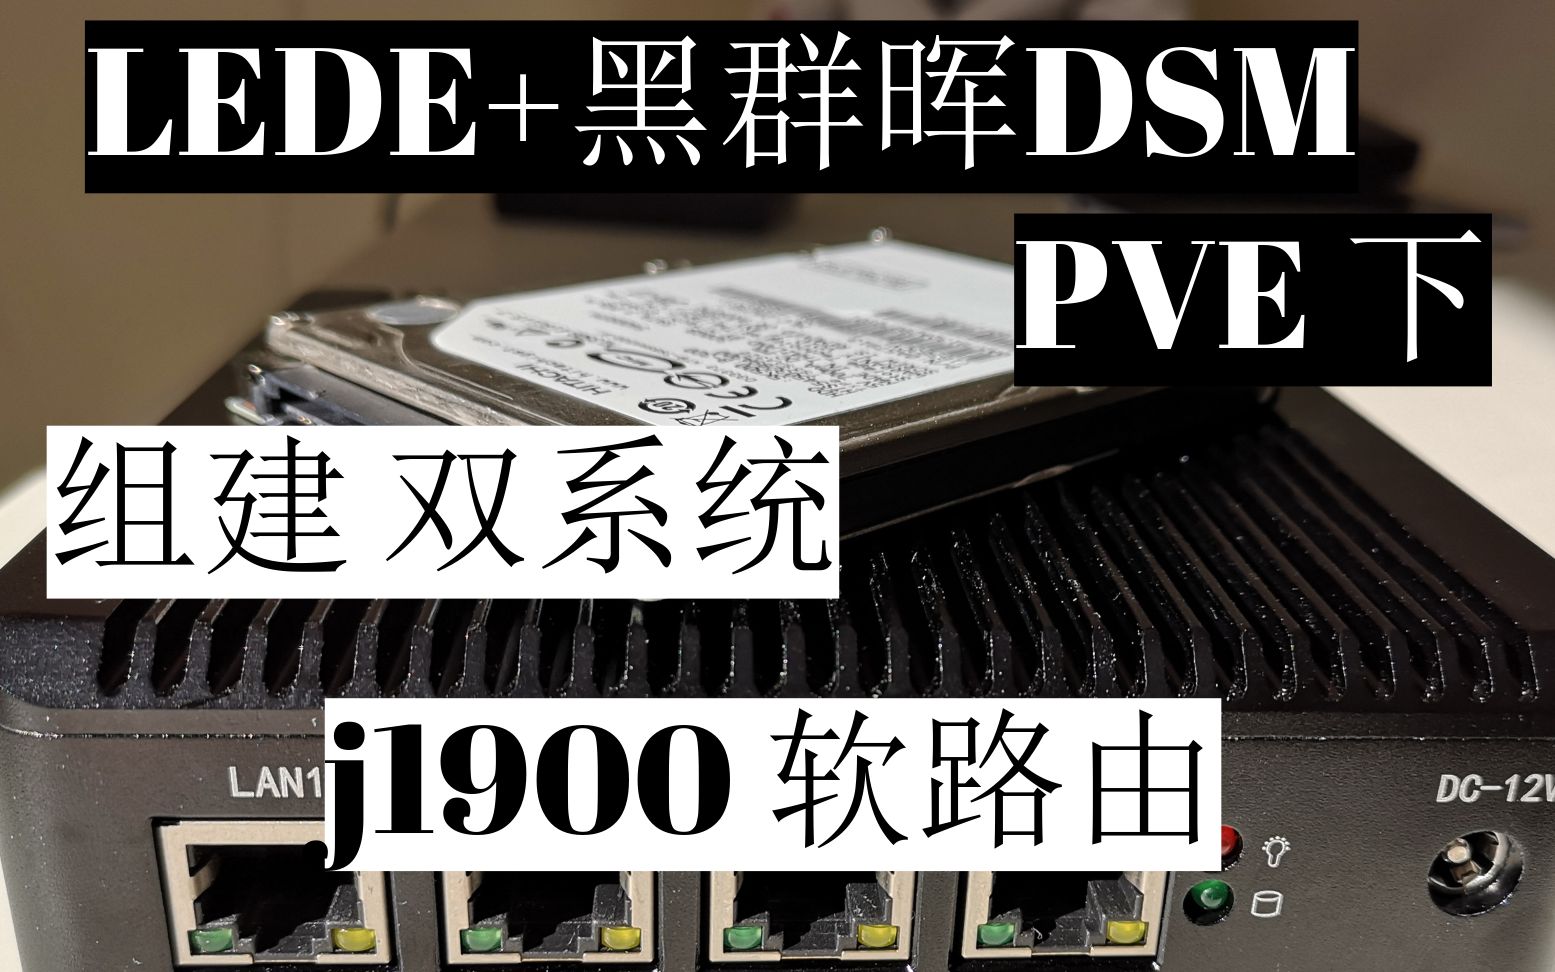 【悟空5kong】PVE下部署LEDE+黑群晖NAS双系统（J1900软路由）